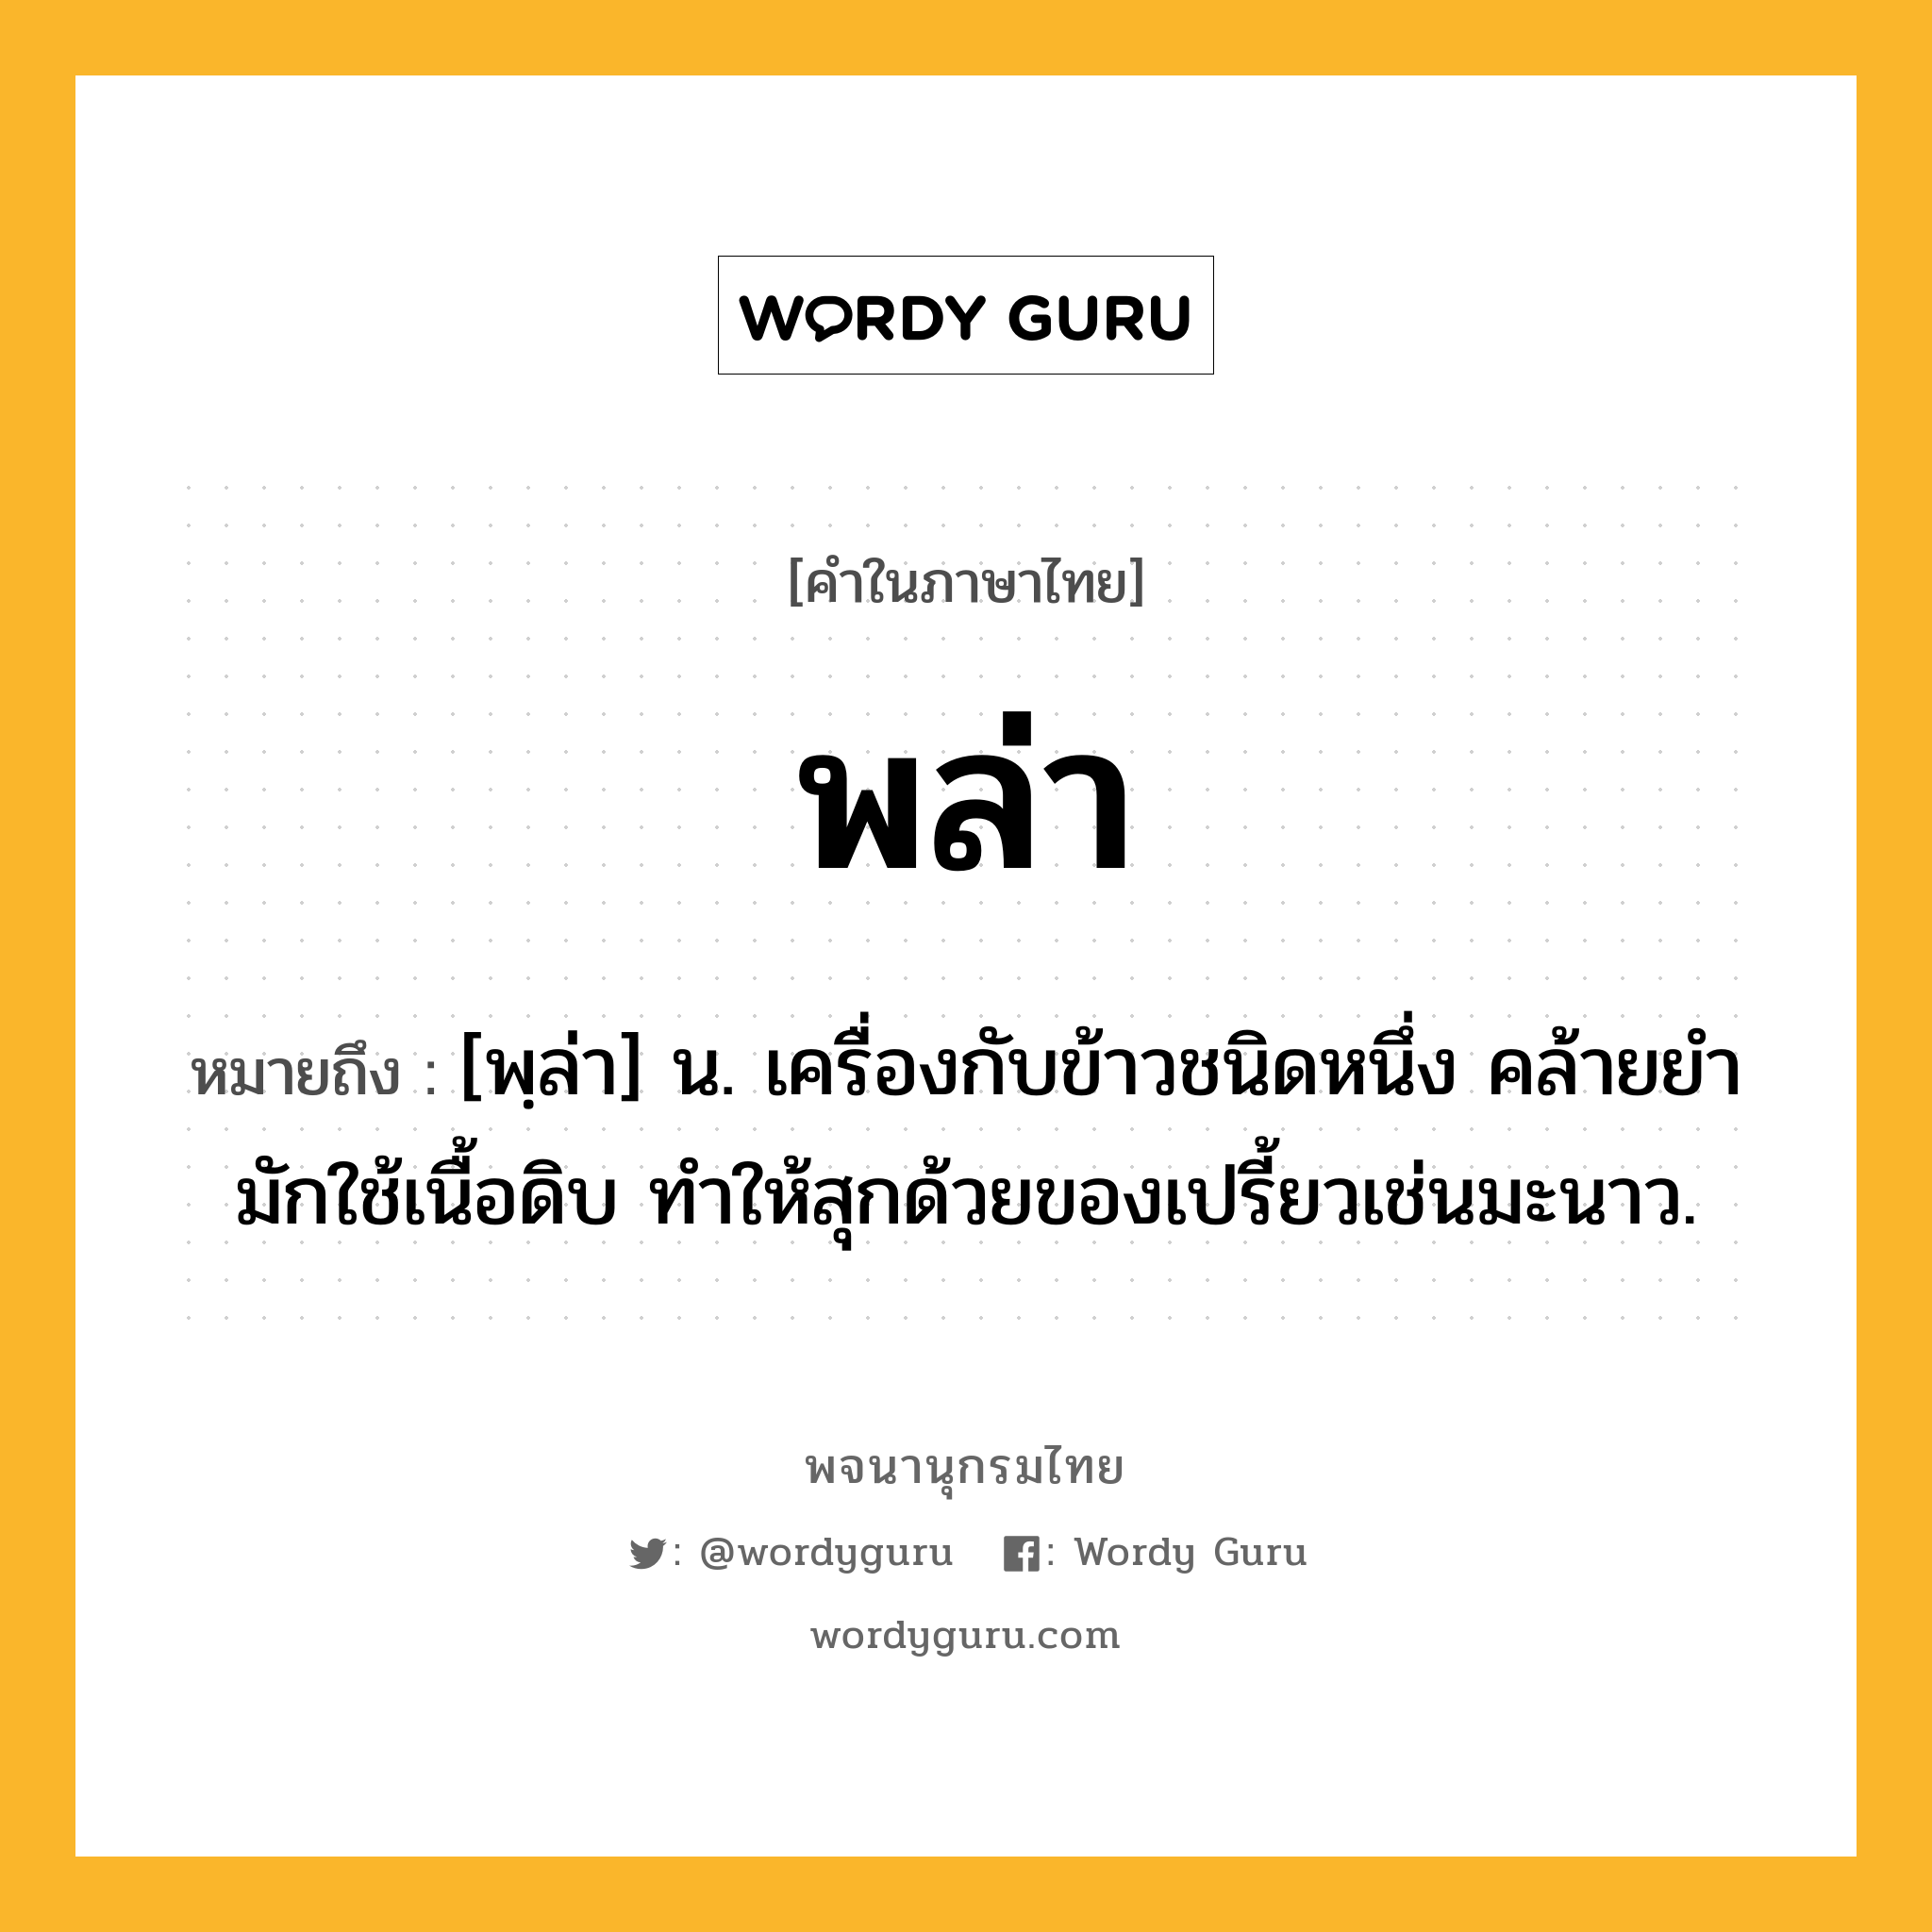 พล่า ความหมาย หมายถึงอะไร?, คำในภาษาไทย พล่า หมายถึง [พฺล่า] น. เครื่องกับข้าวชนิดหนึ่ง คล้ายยํา มักใช้เนื้อดิบ ทำให้สุกด้วยของเปรี้ยวเช่นมะนาว.